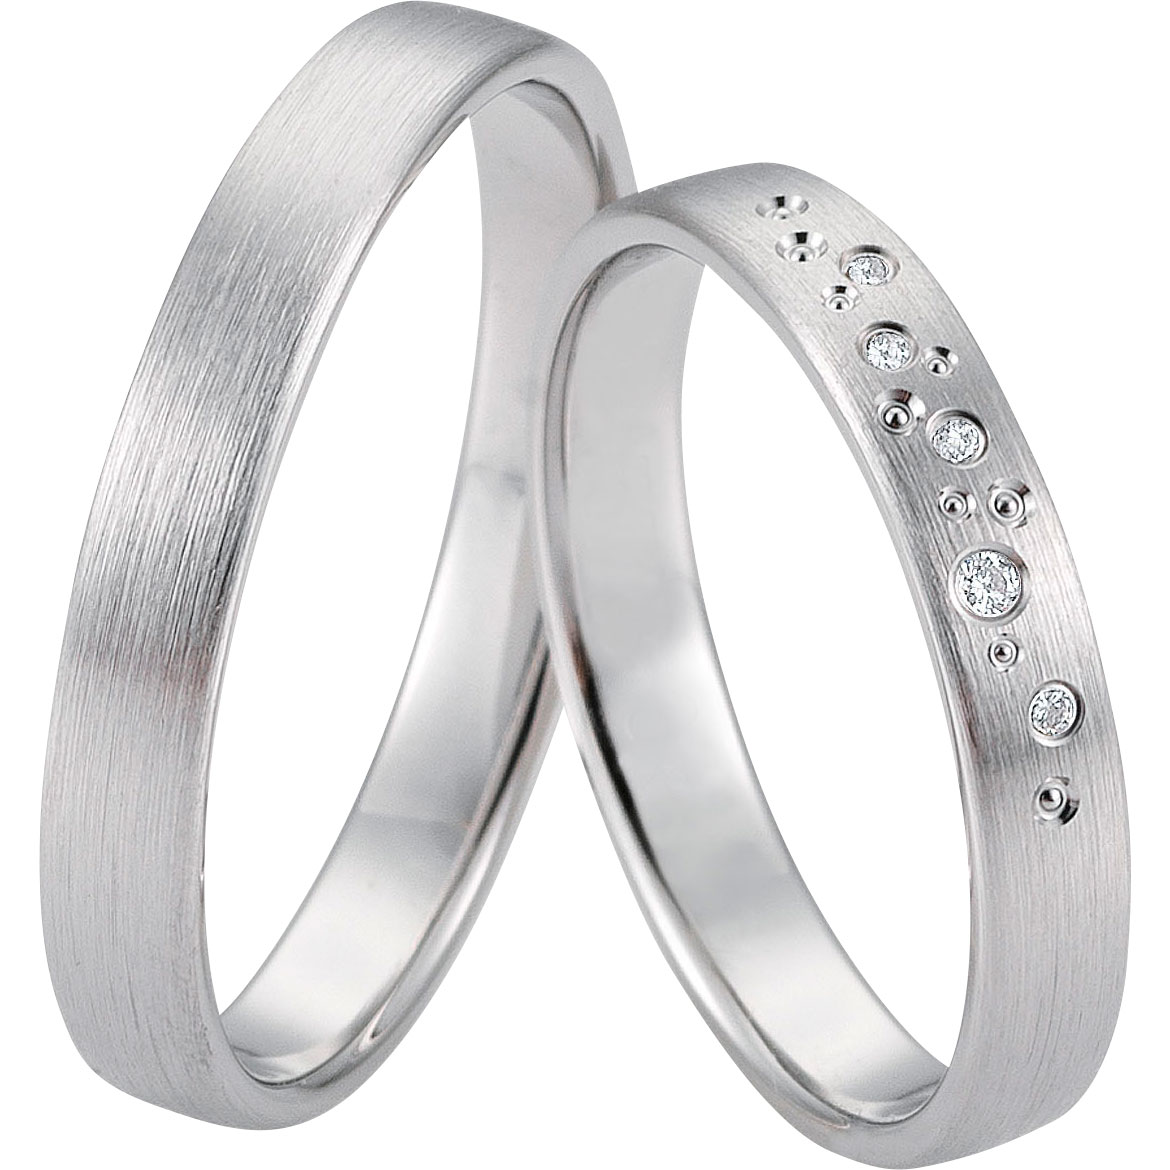 Fábrica al por mayor personalizada del odm del OEM de la joyería del anillo de plata 925 por 20 AÑOS